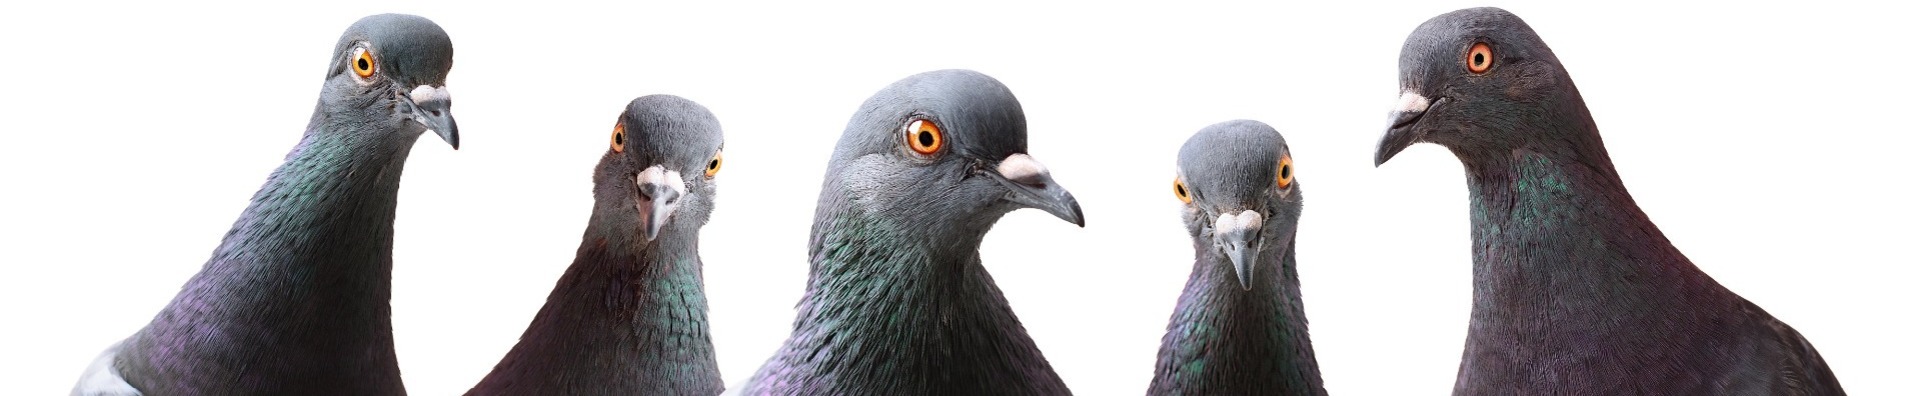 Pigeon heads